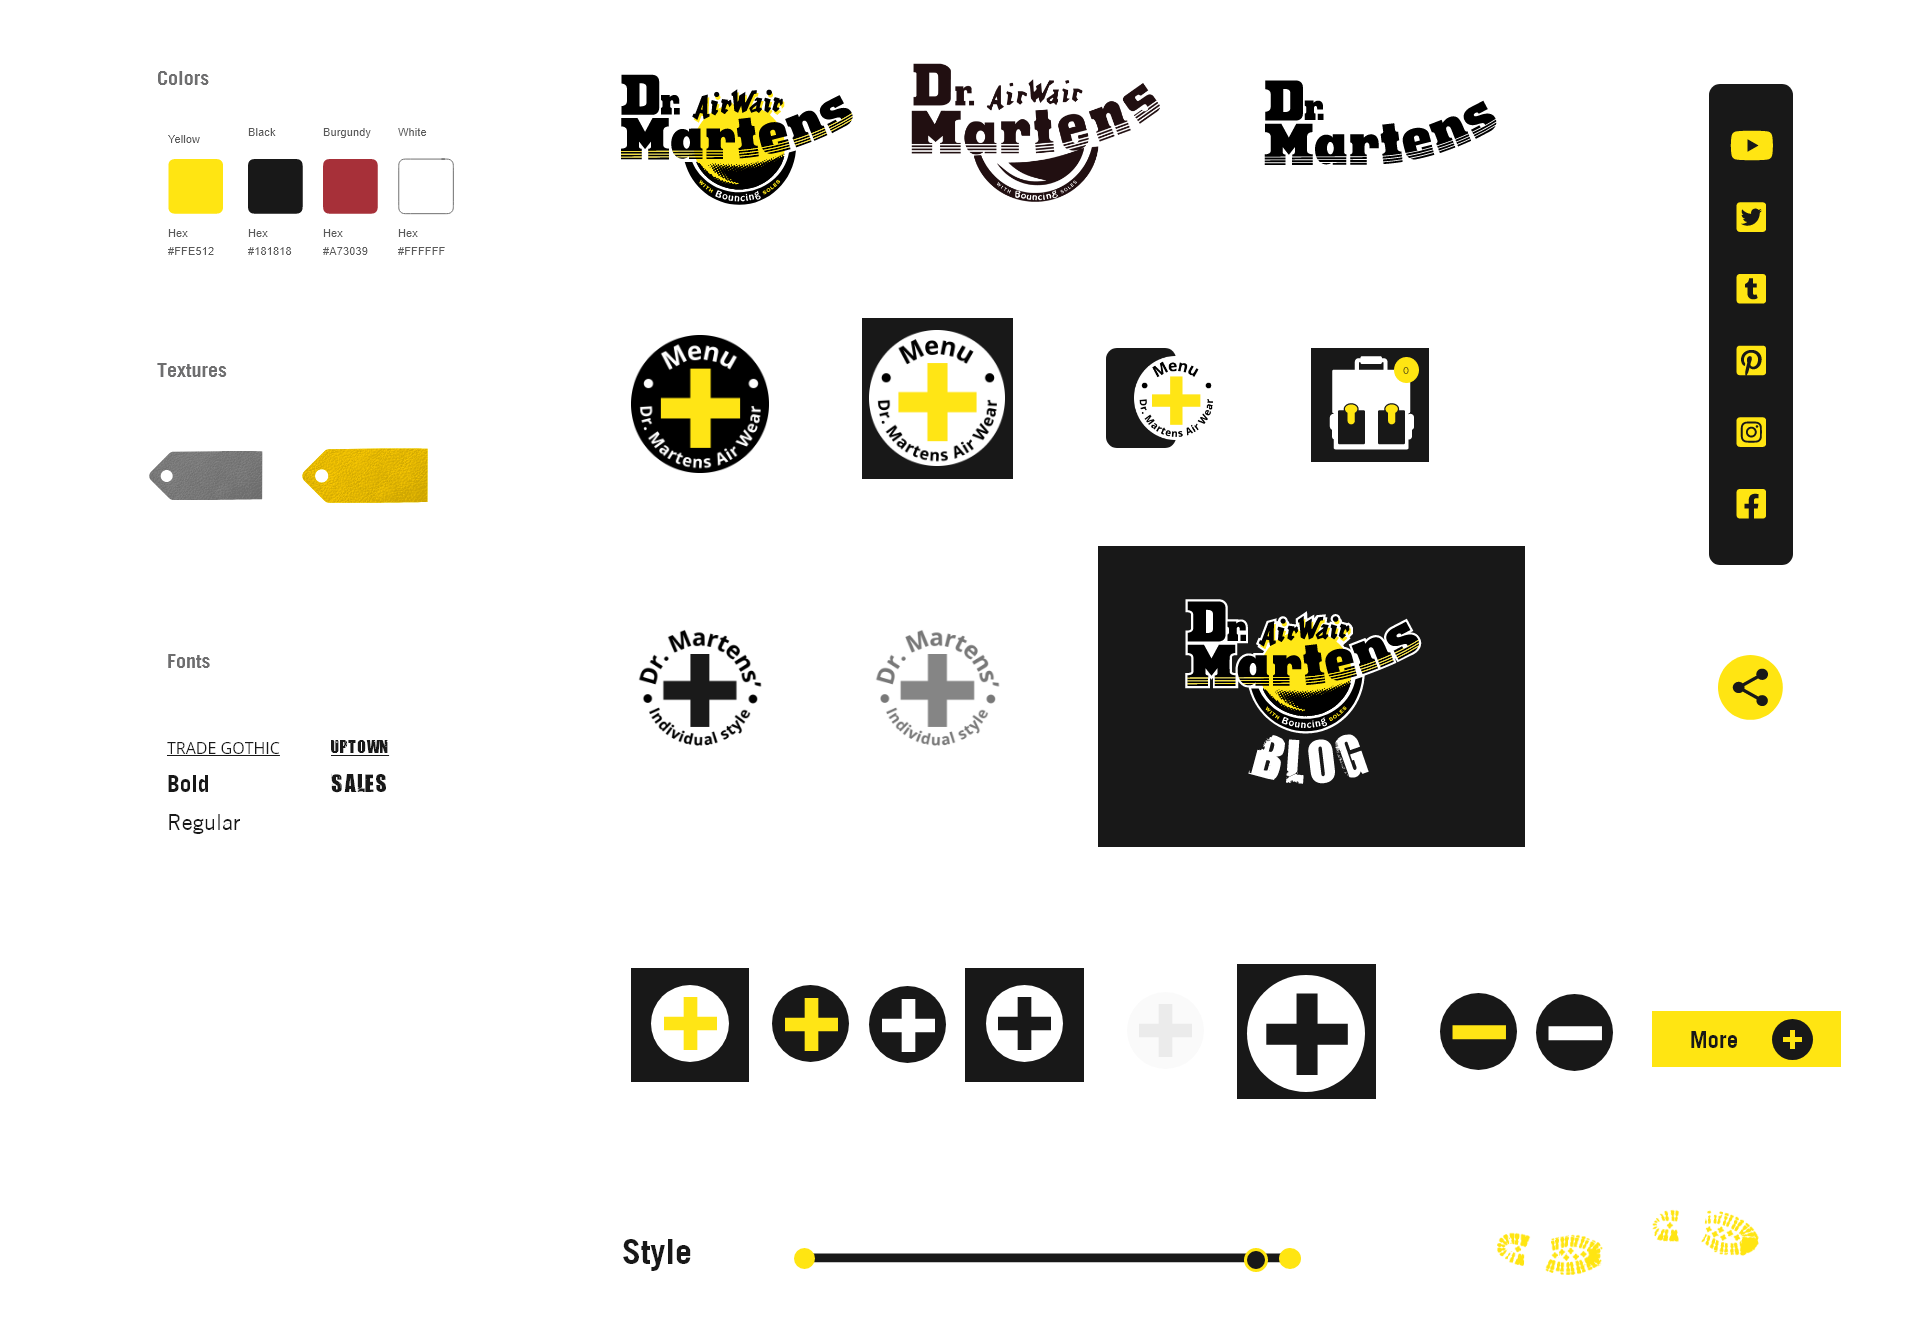 Typo couleurs icones refonte de site Dr Martens